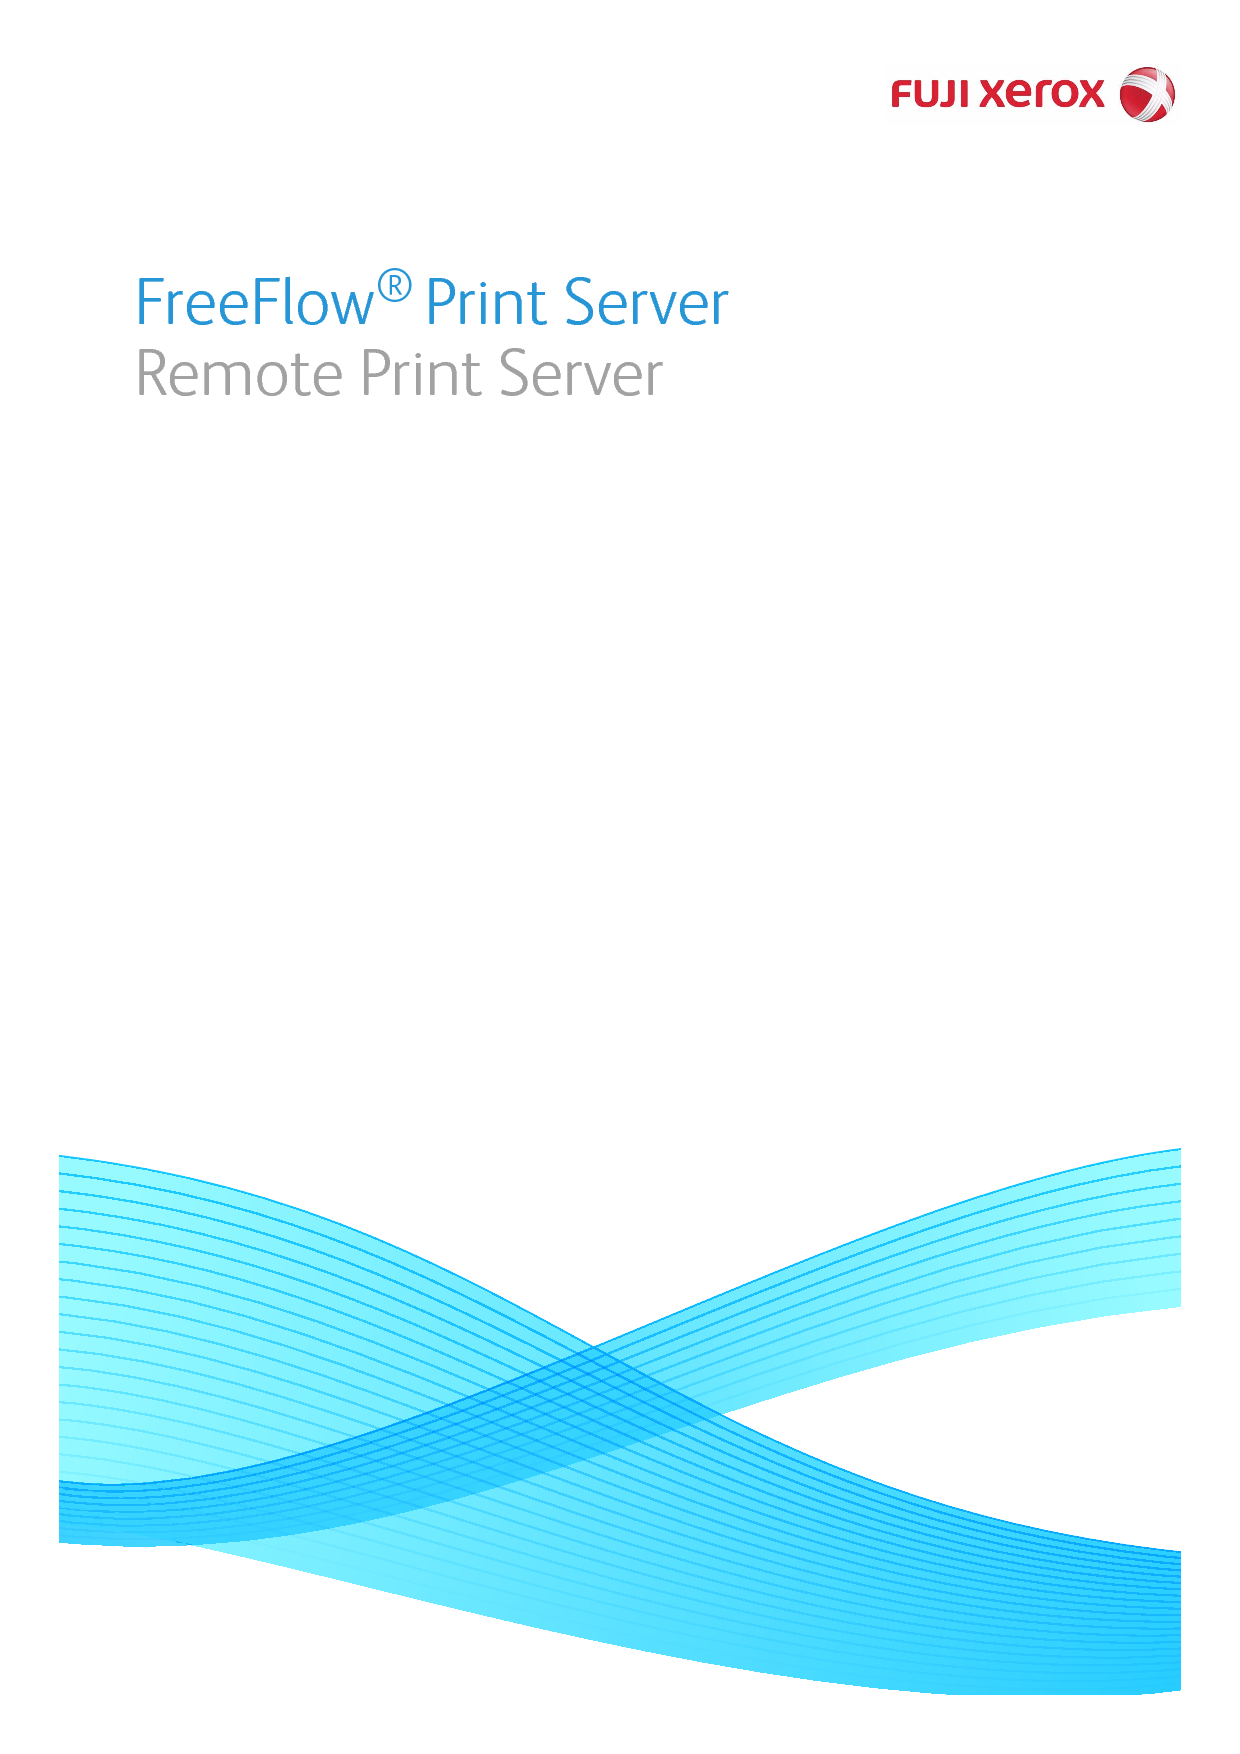 富士施乐 Fuji Xerox FreeFlow Remote Print Server 使用说明书 封面